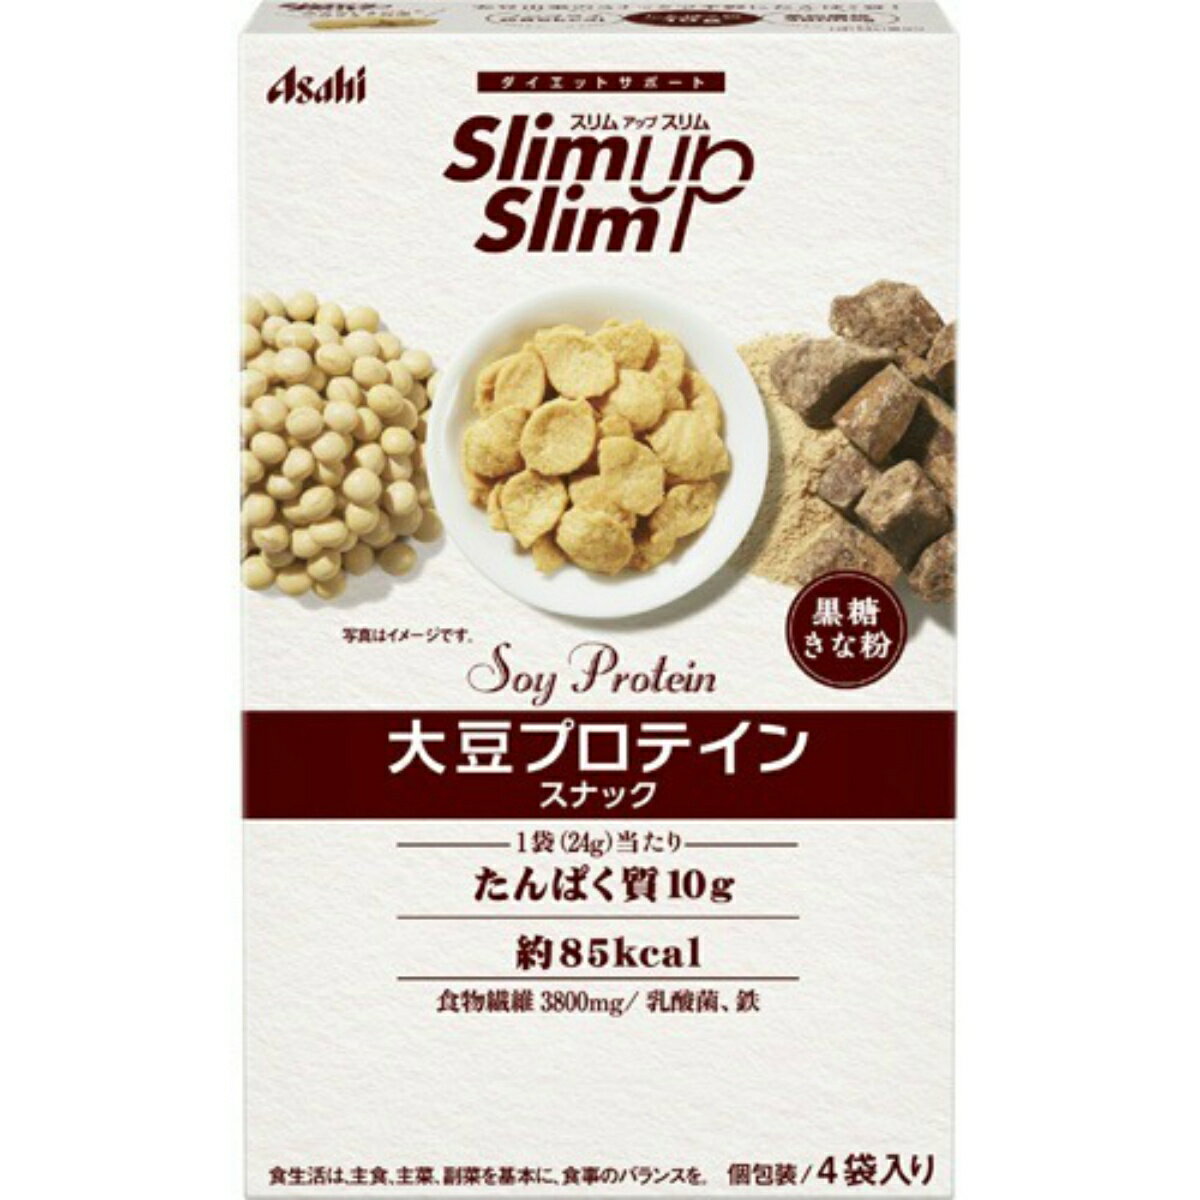 【送料込】 アサヒグループ食品 スリムアップスリム 大豆プロテインスナック 黒糖きな粉 20g×4袋入 1個